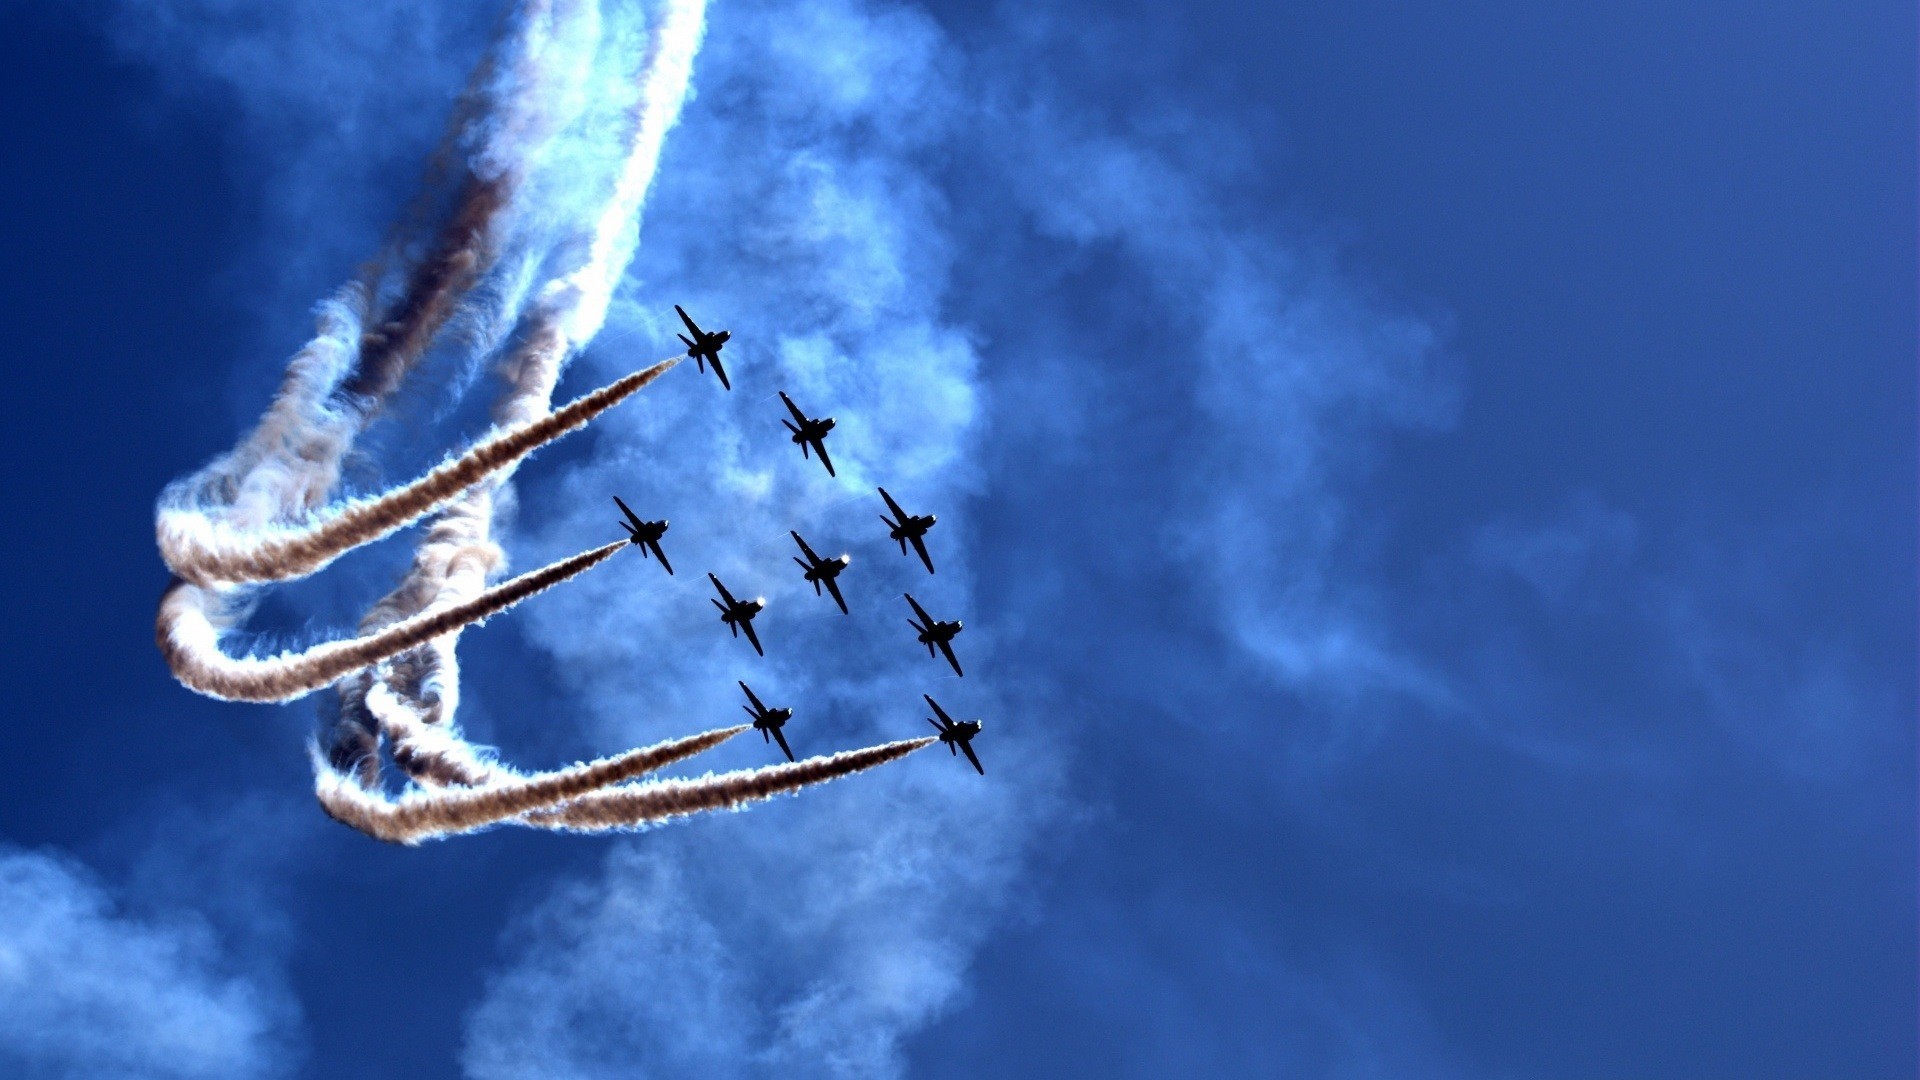 logo de l'armée de l'air indienne hd fond d'écran,bleu,salon de l'aéronautique,ciel,avion,acrobaties aériennes